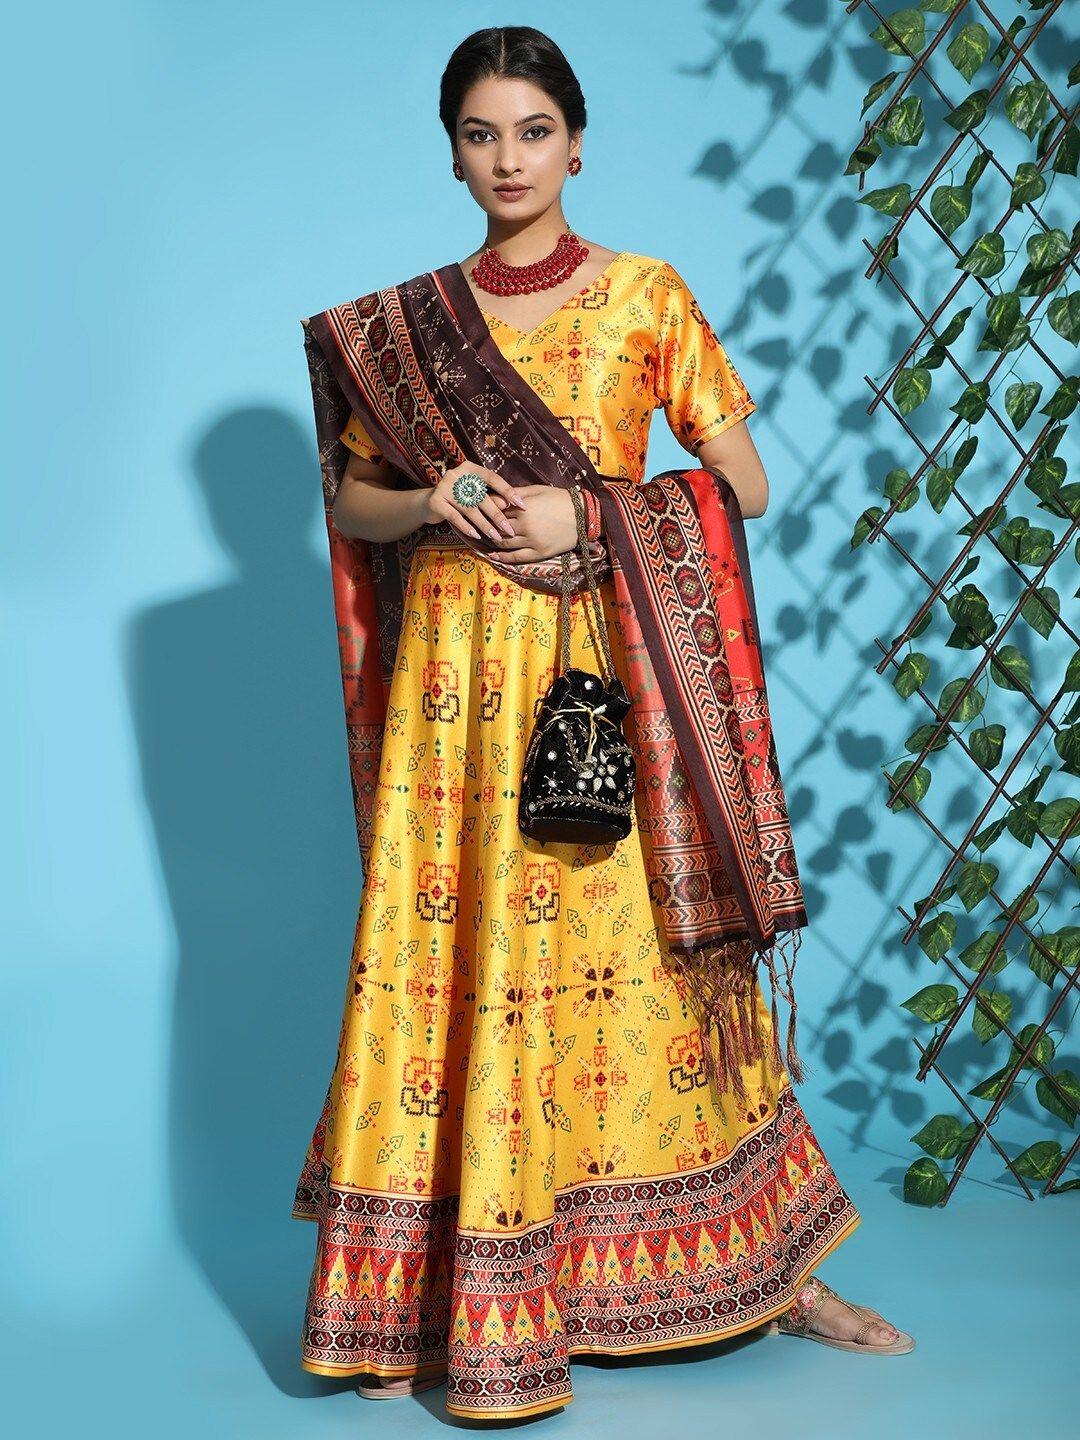 kaizen texo fab yellow & orange printed semi-stitched lehenga & blouse with dupatta